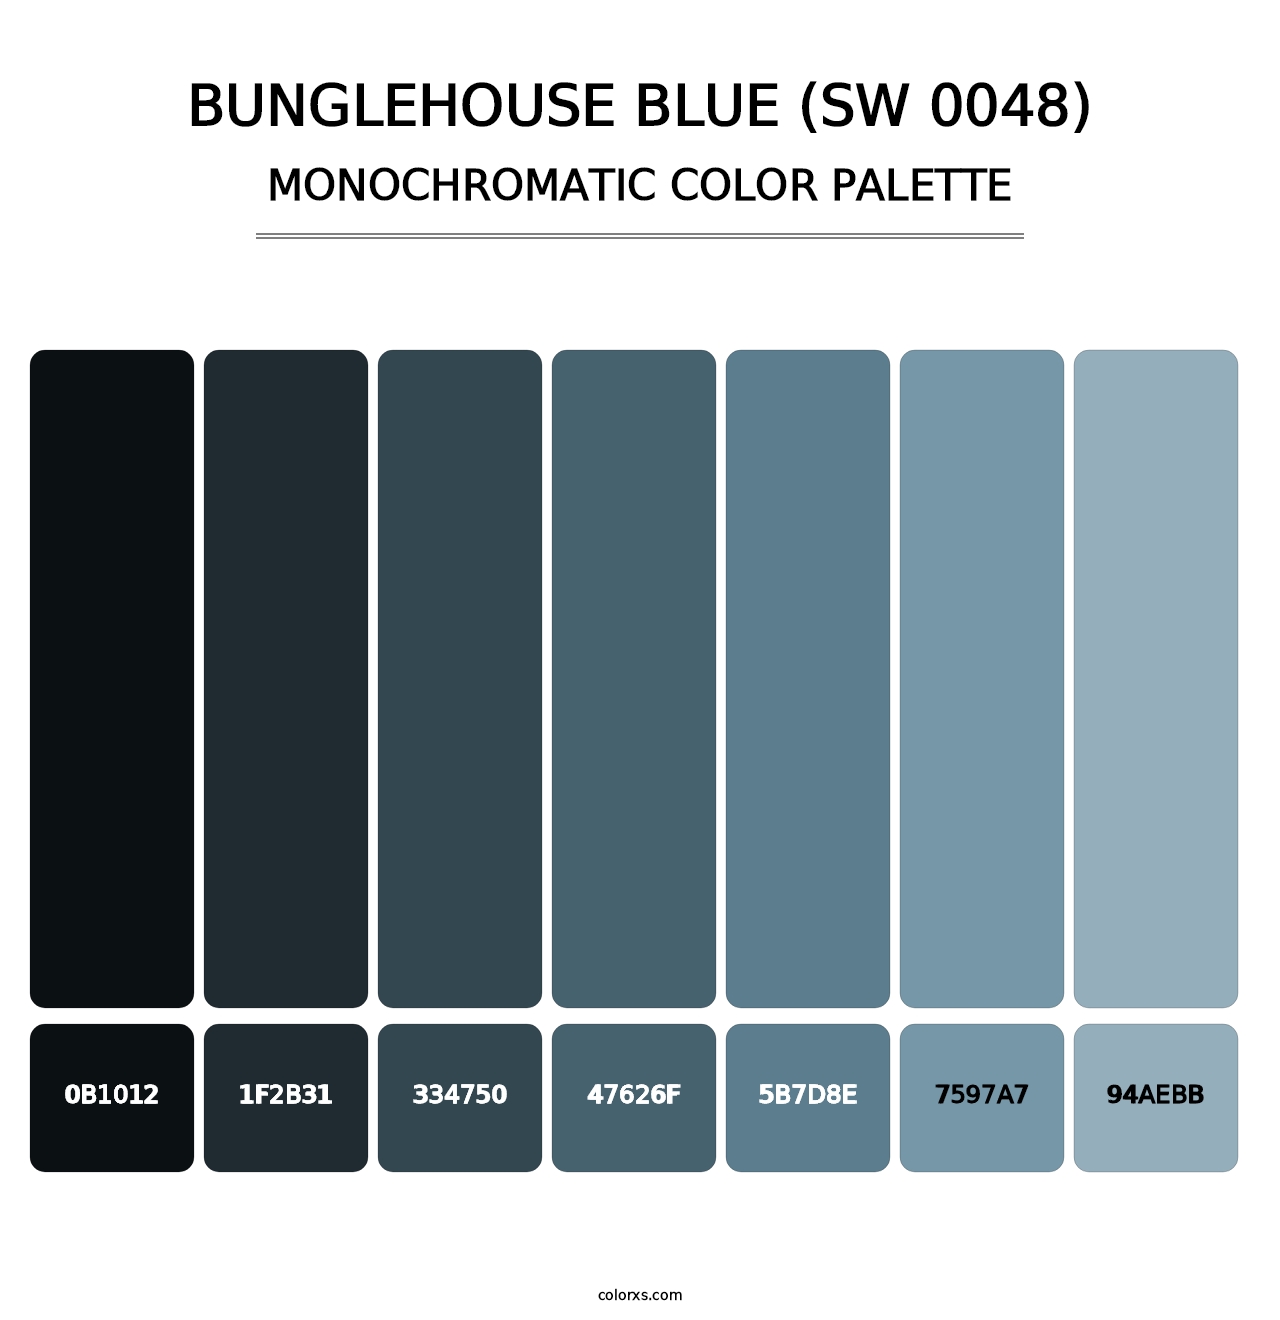 Bunglehouse Blue (SW 0048) - Monochromatic Color Palette